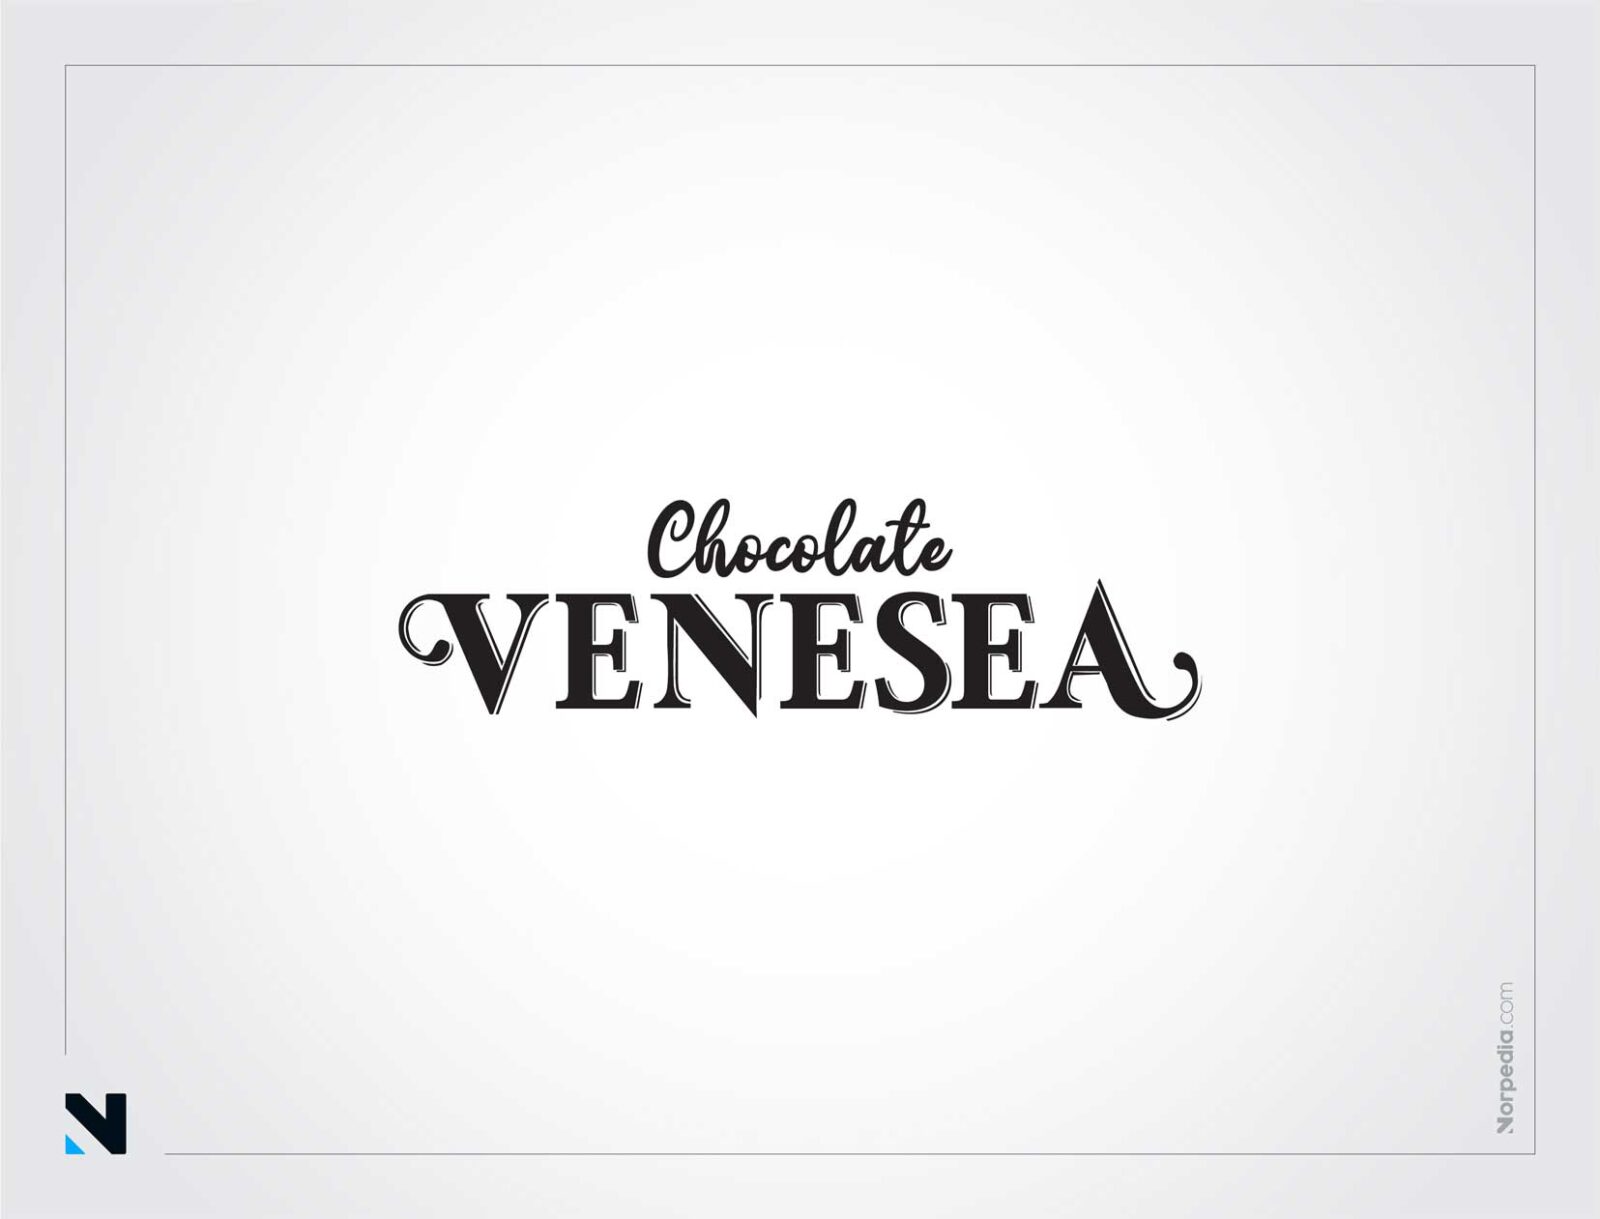 Venesea